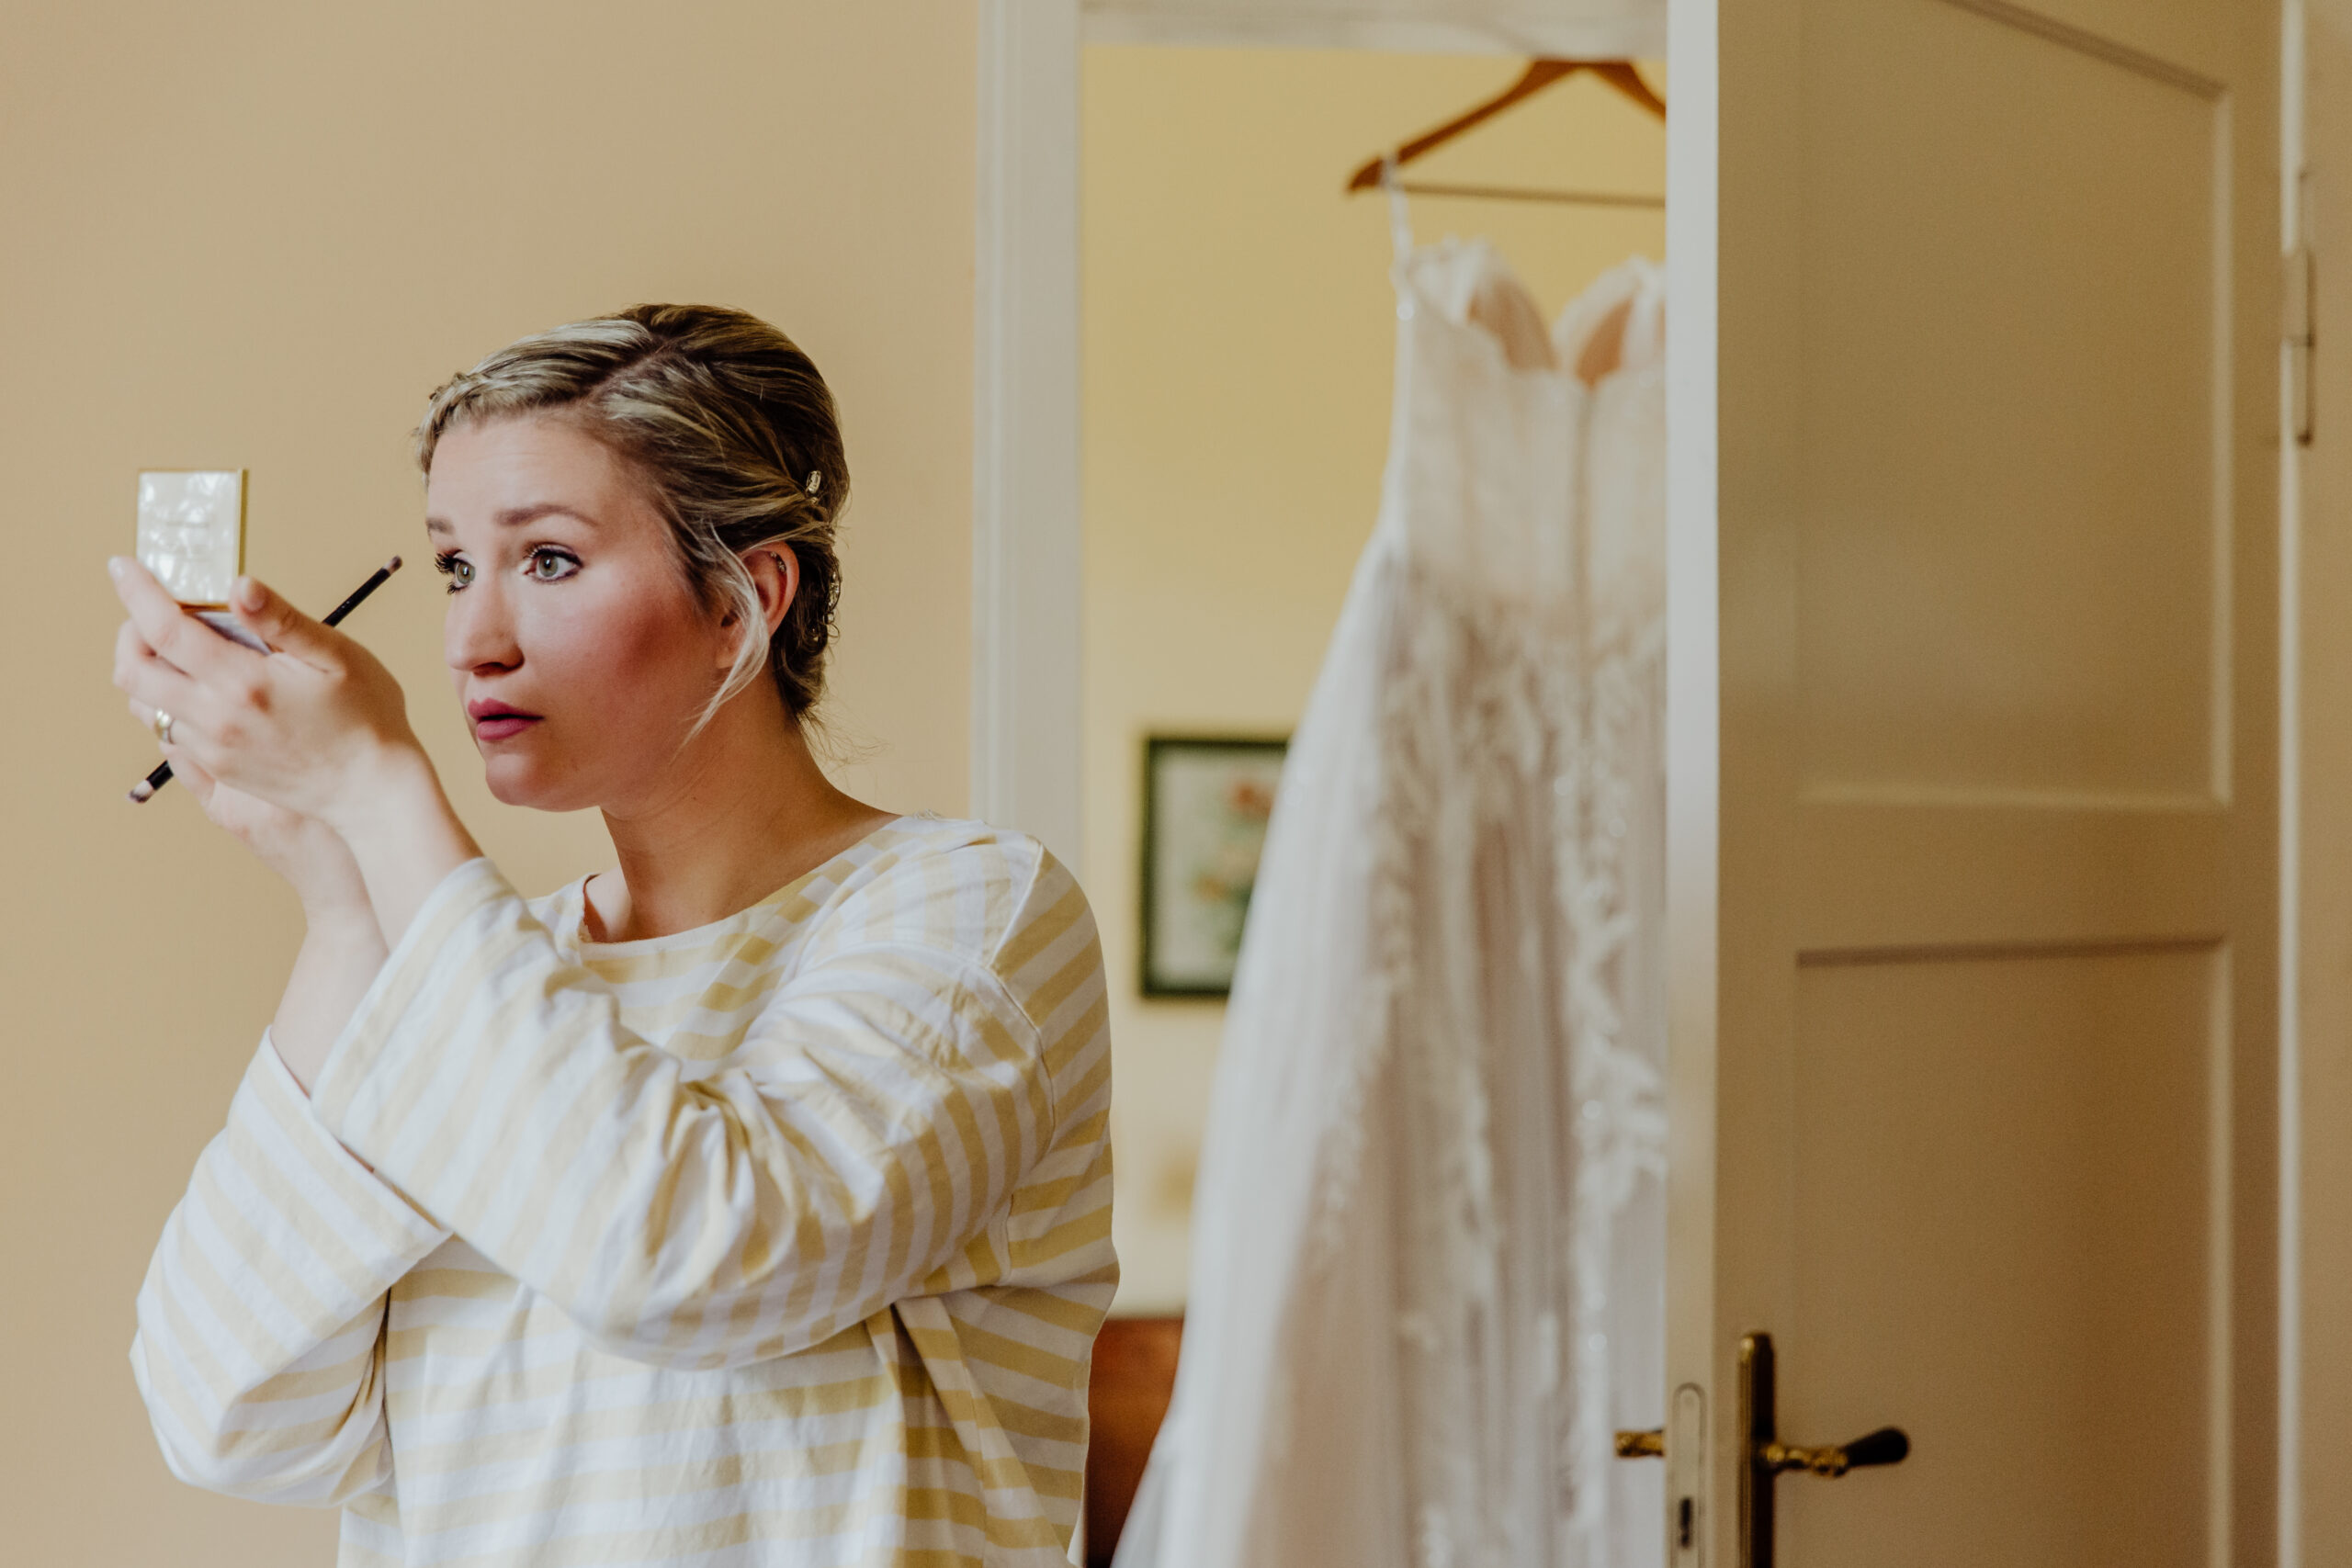 Das Getting Ready – Eine Frau wird zur Braut